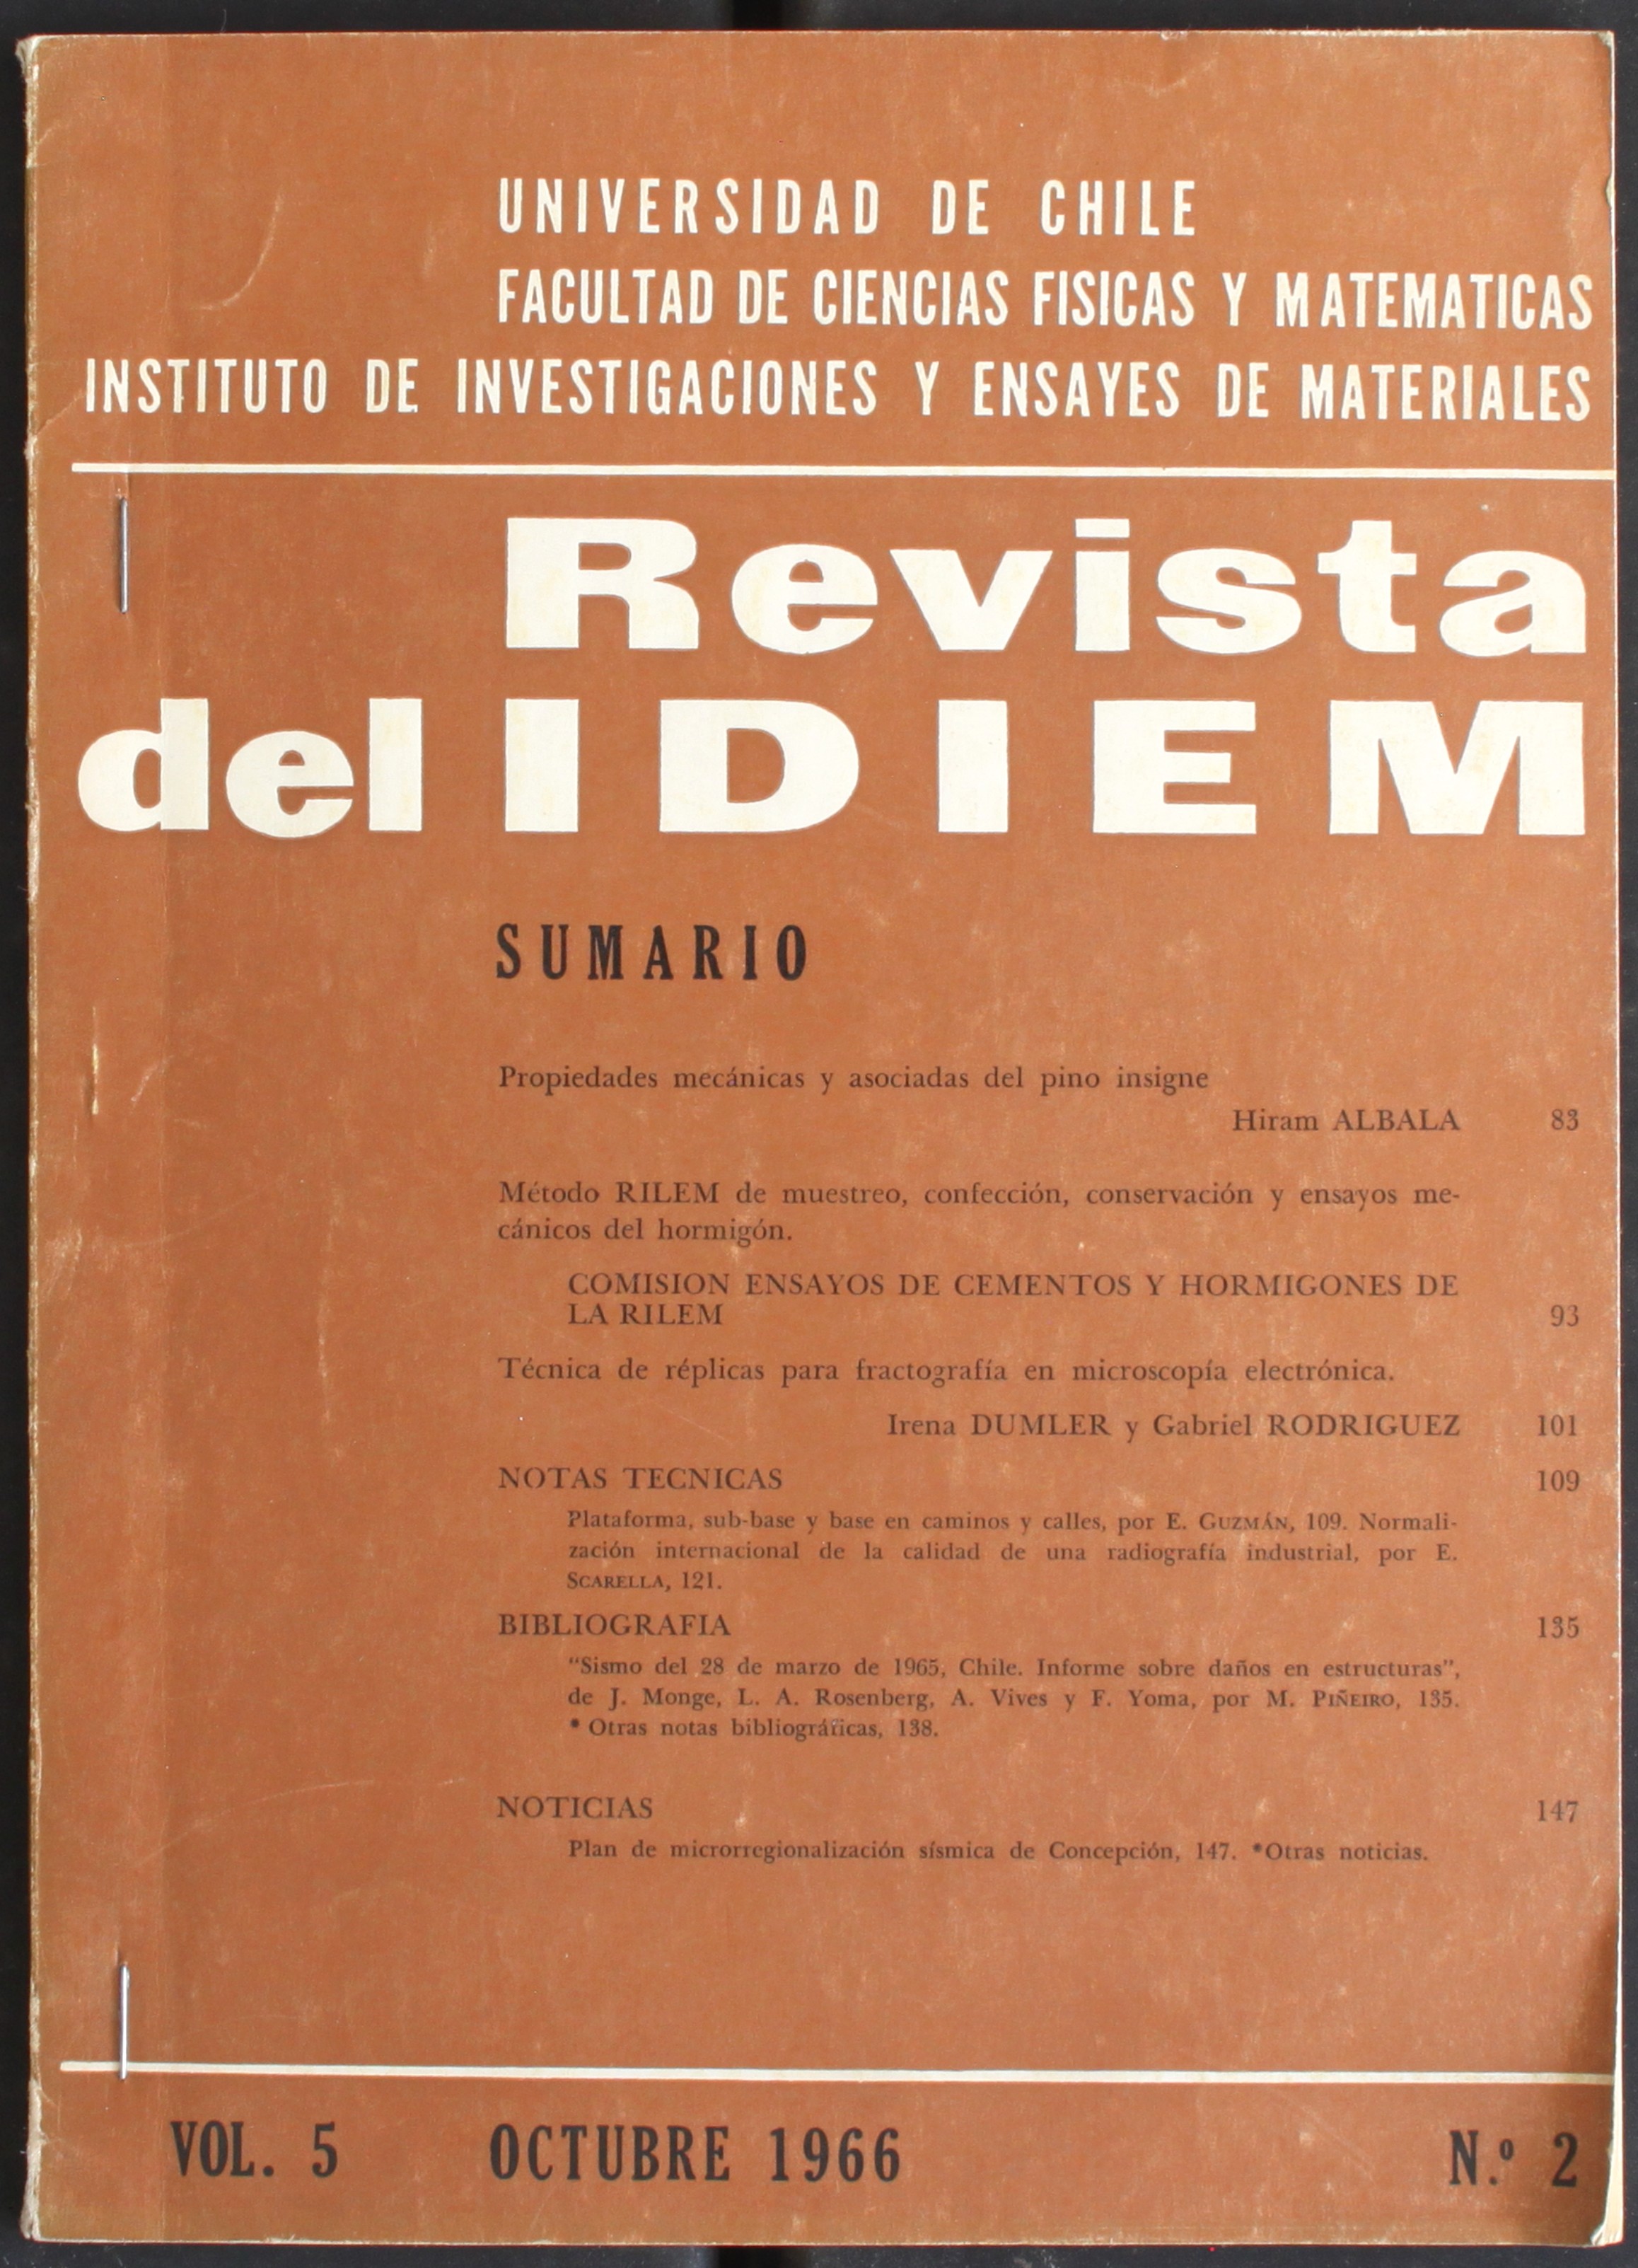 												Ver Vol. 6 Núm. 1 (1967): Año 1967, mayo
											